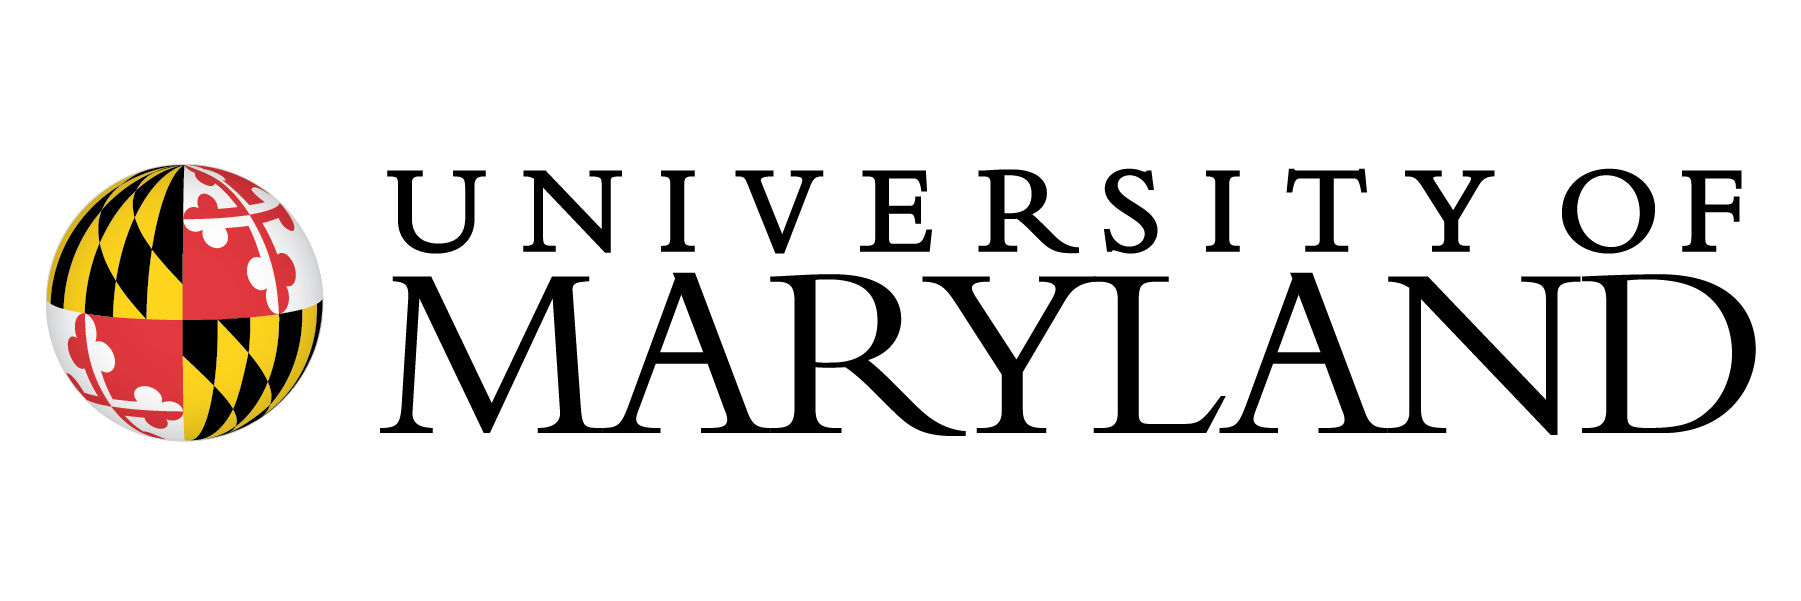 Univeristy of Maryland